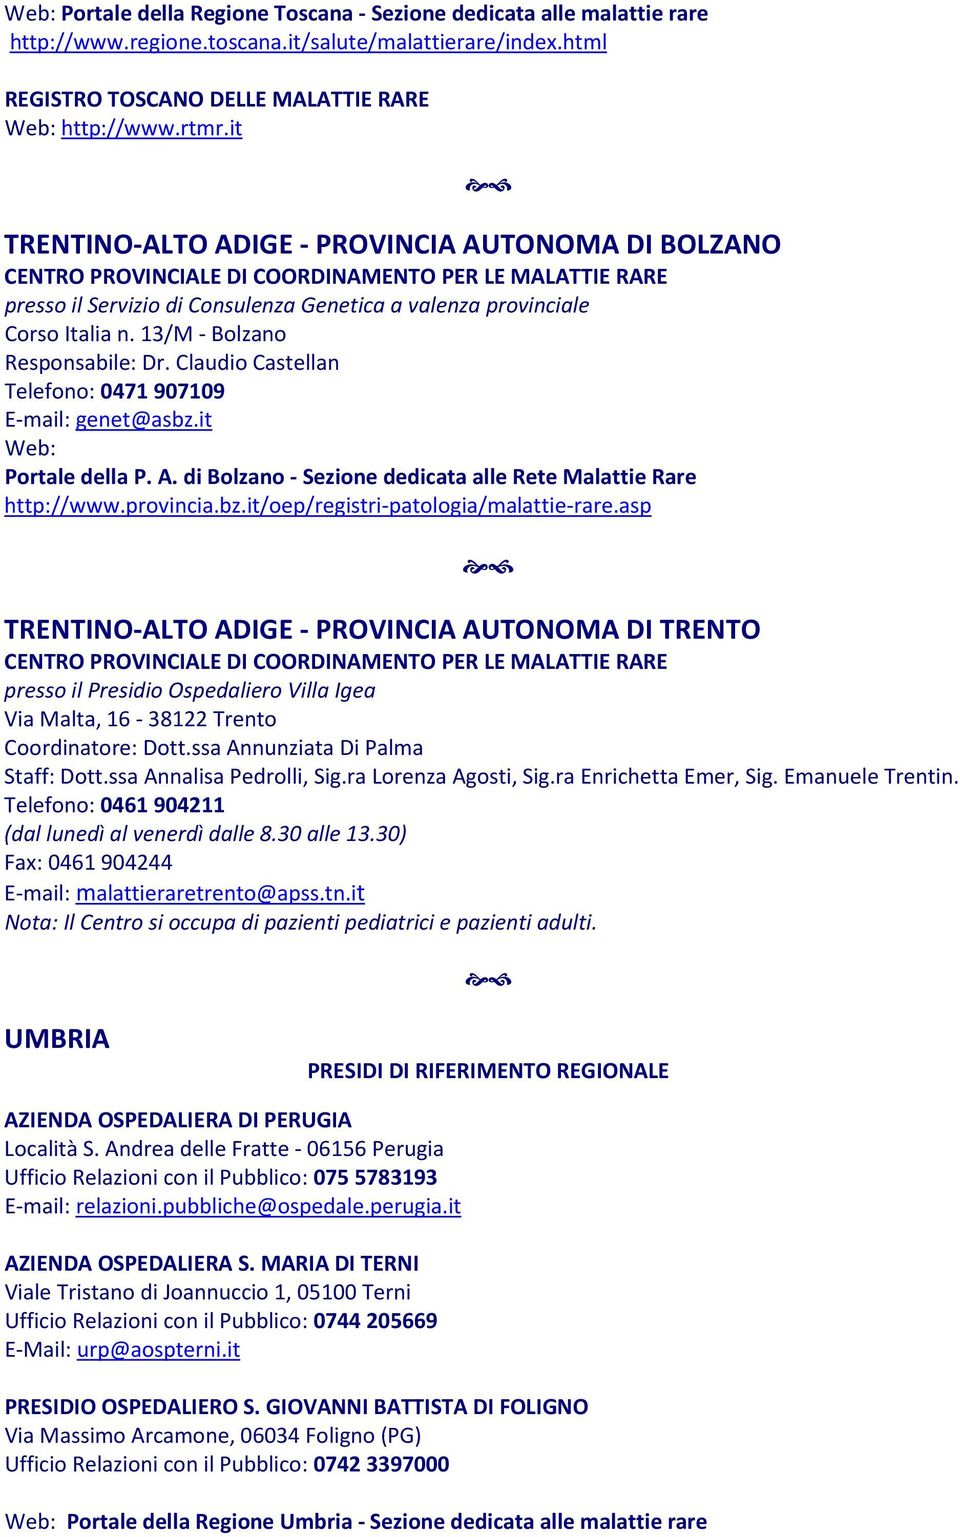 13/M - Bolzano Responsabile: Dr. Claudio Castellan Telefono: 0471 907109 E-mail: genet@asbz.it Portale della P. A. di Bolzano - Sezione dedicata alle Rete Malattie Rare http://www.provincia.bz.it/oep/registri-patologia/malattie-rare.